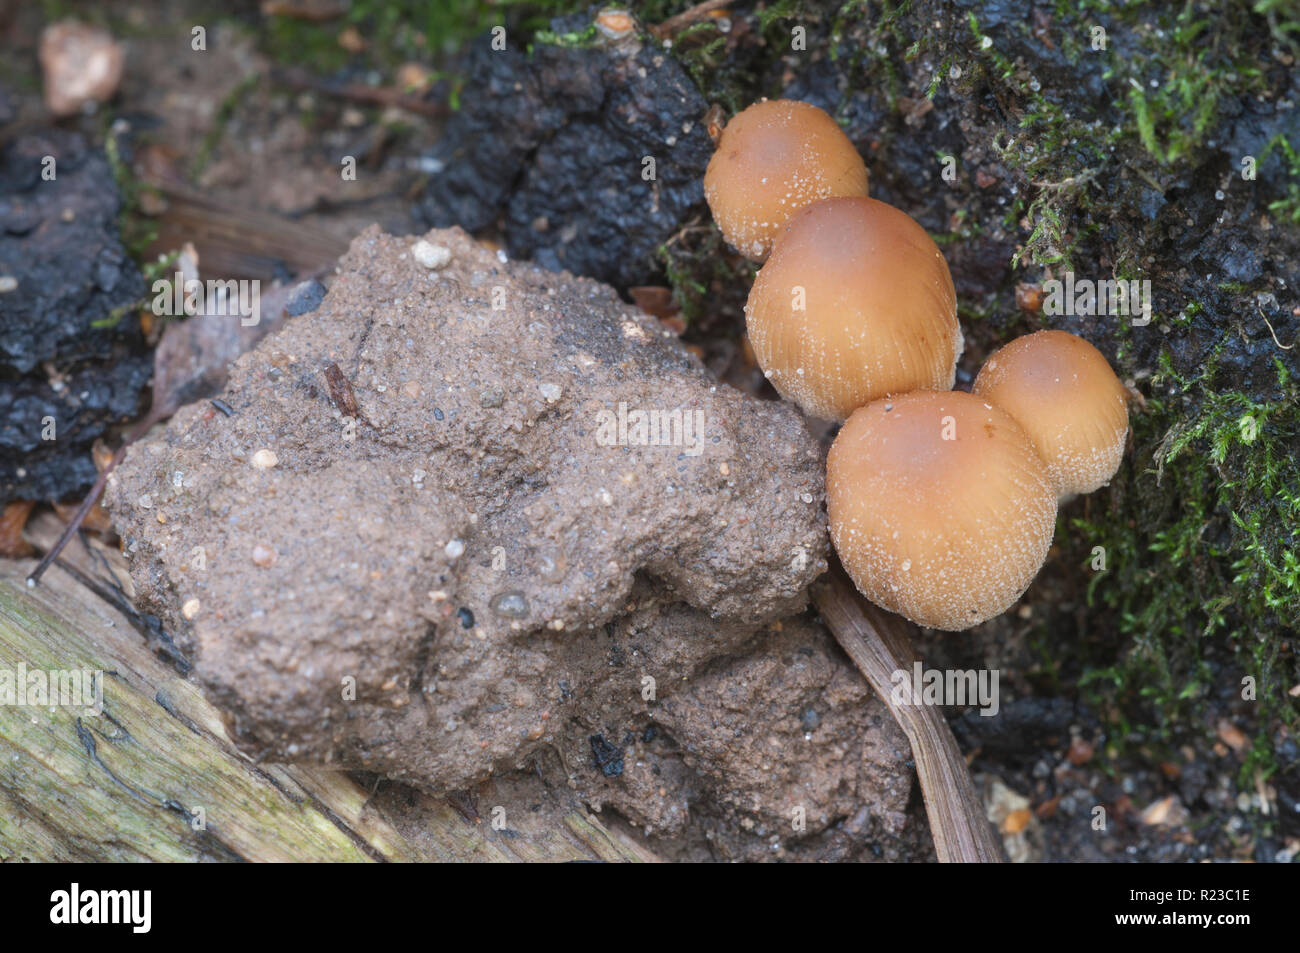 Coprinus micaceus mushroom near the tree, close up Stock Photo